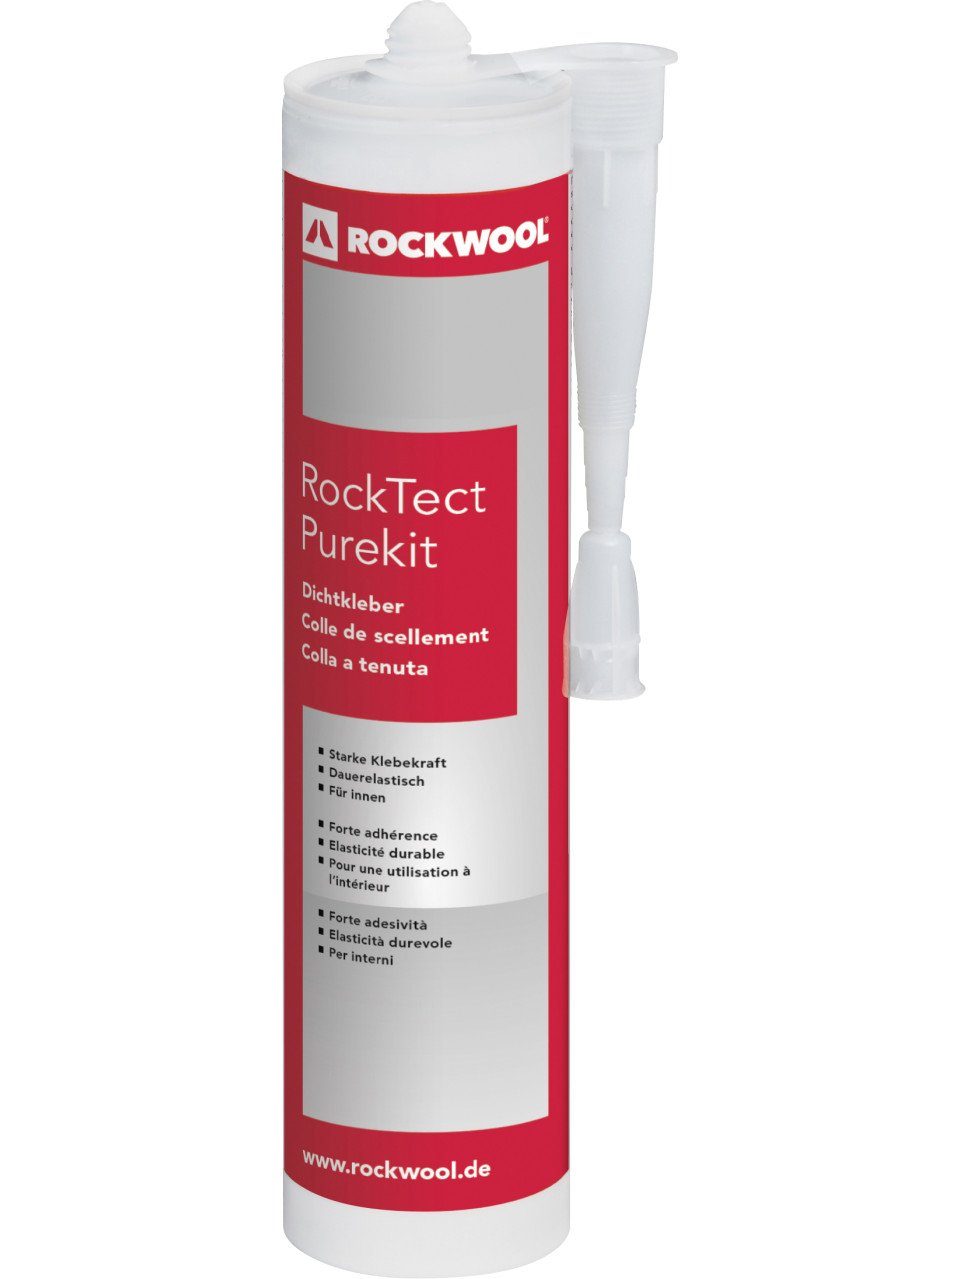 Rockwool ml Rockwool Mineral 310 RockTect Purekit Dämmstoffdübel Dichtkleber